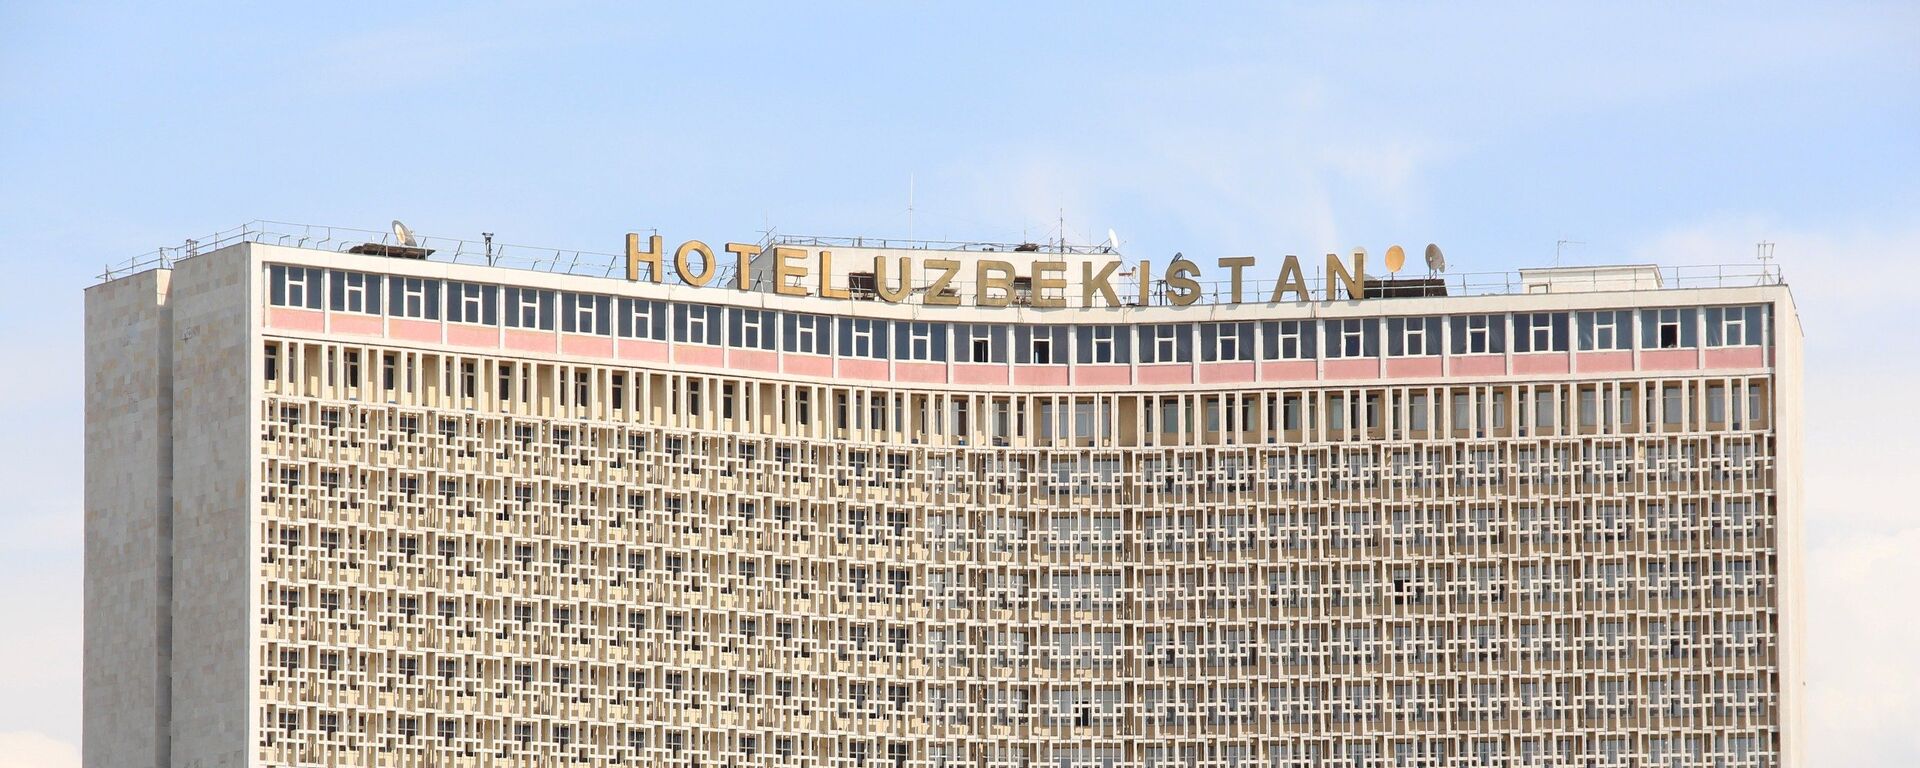 Гостиница Узбекистан в центре Ташкента - Sputnik Узбекистан, 1920, 22.06.2021